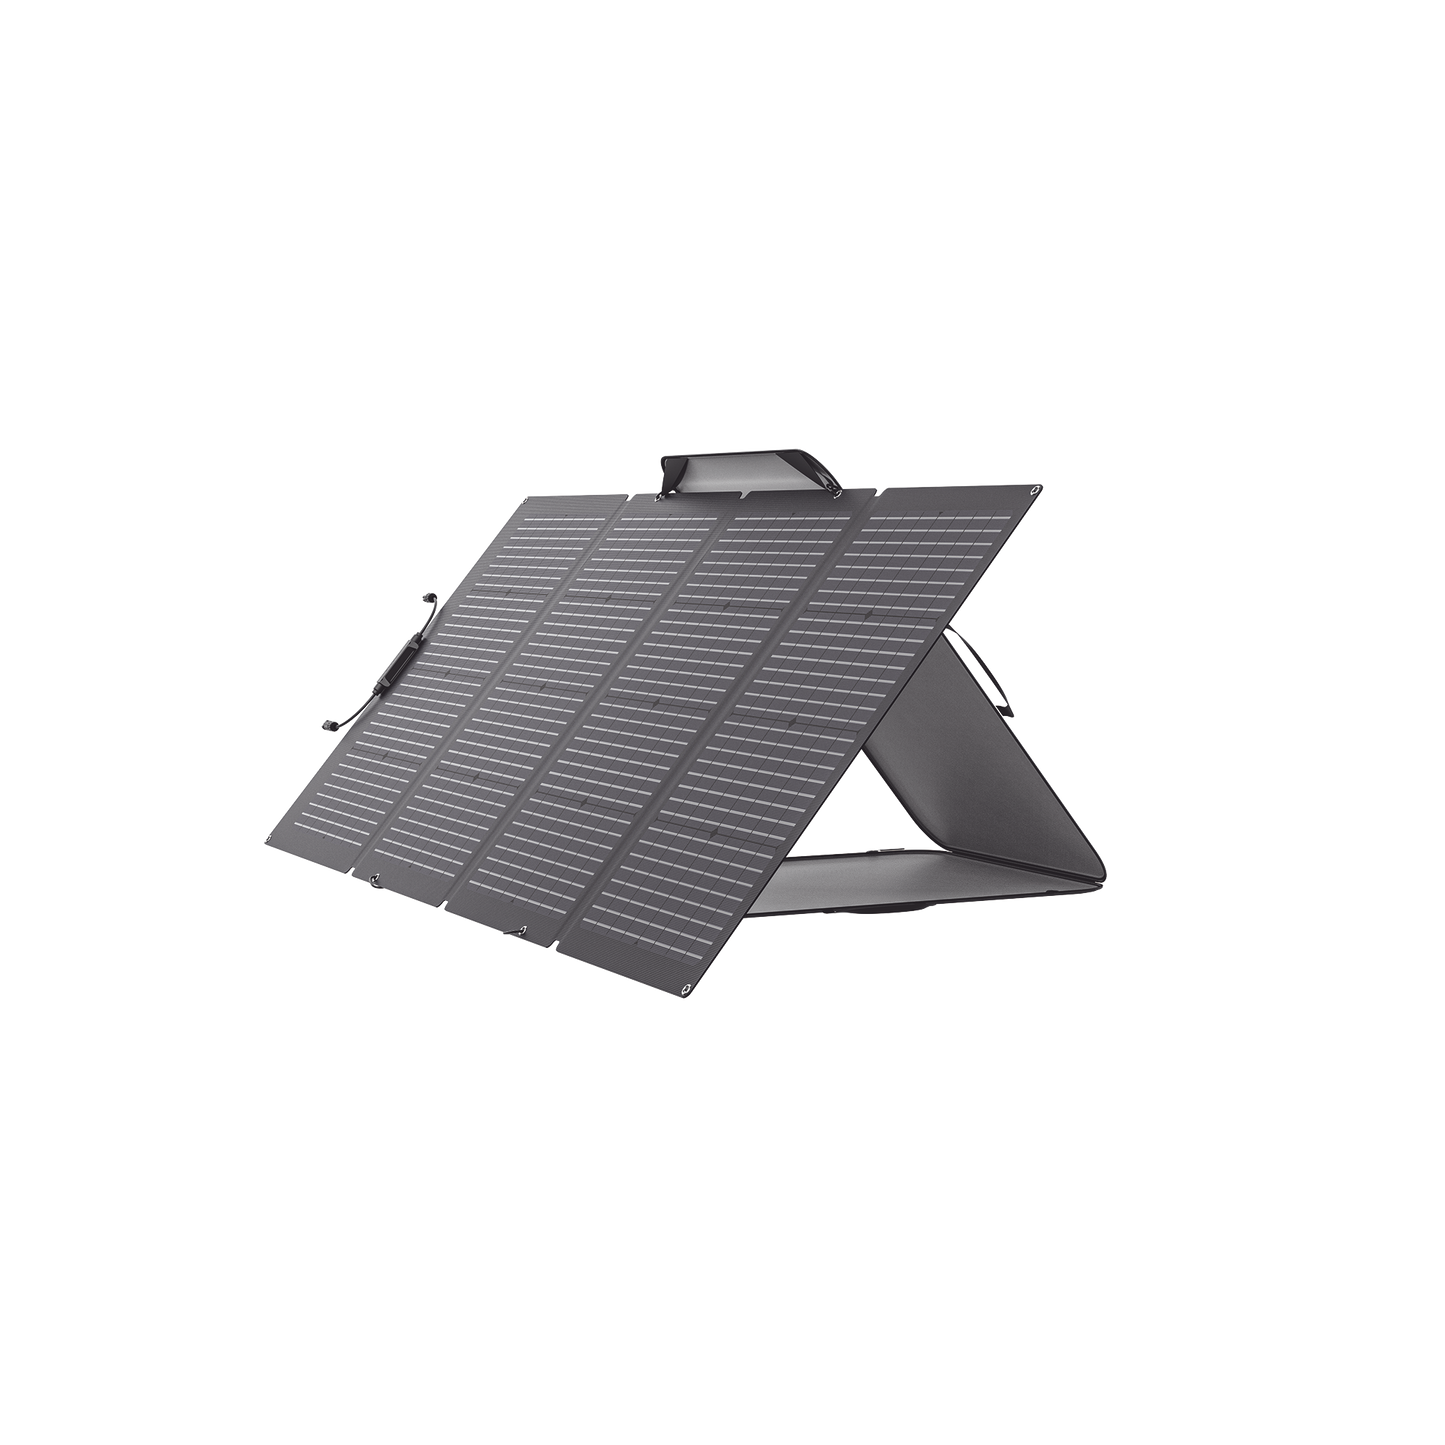 Módulo Solar Portátil y Flexible de 220W Recomendado para Estaciones Portátiles EFD330, EFD350 ó EFD500 / Ajuste de Ángulo / Carga Eficiente / Incluye Cable XT60 a MC4